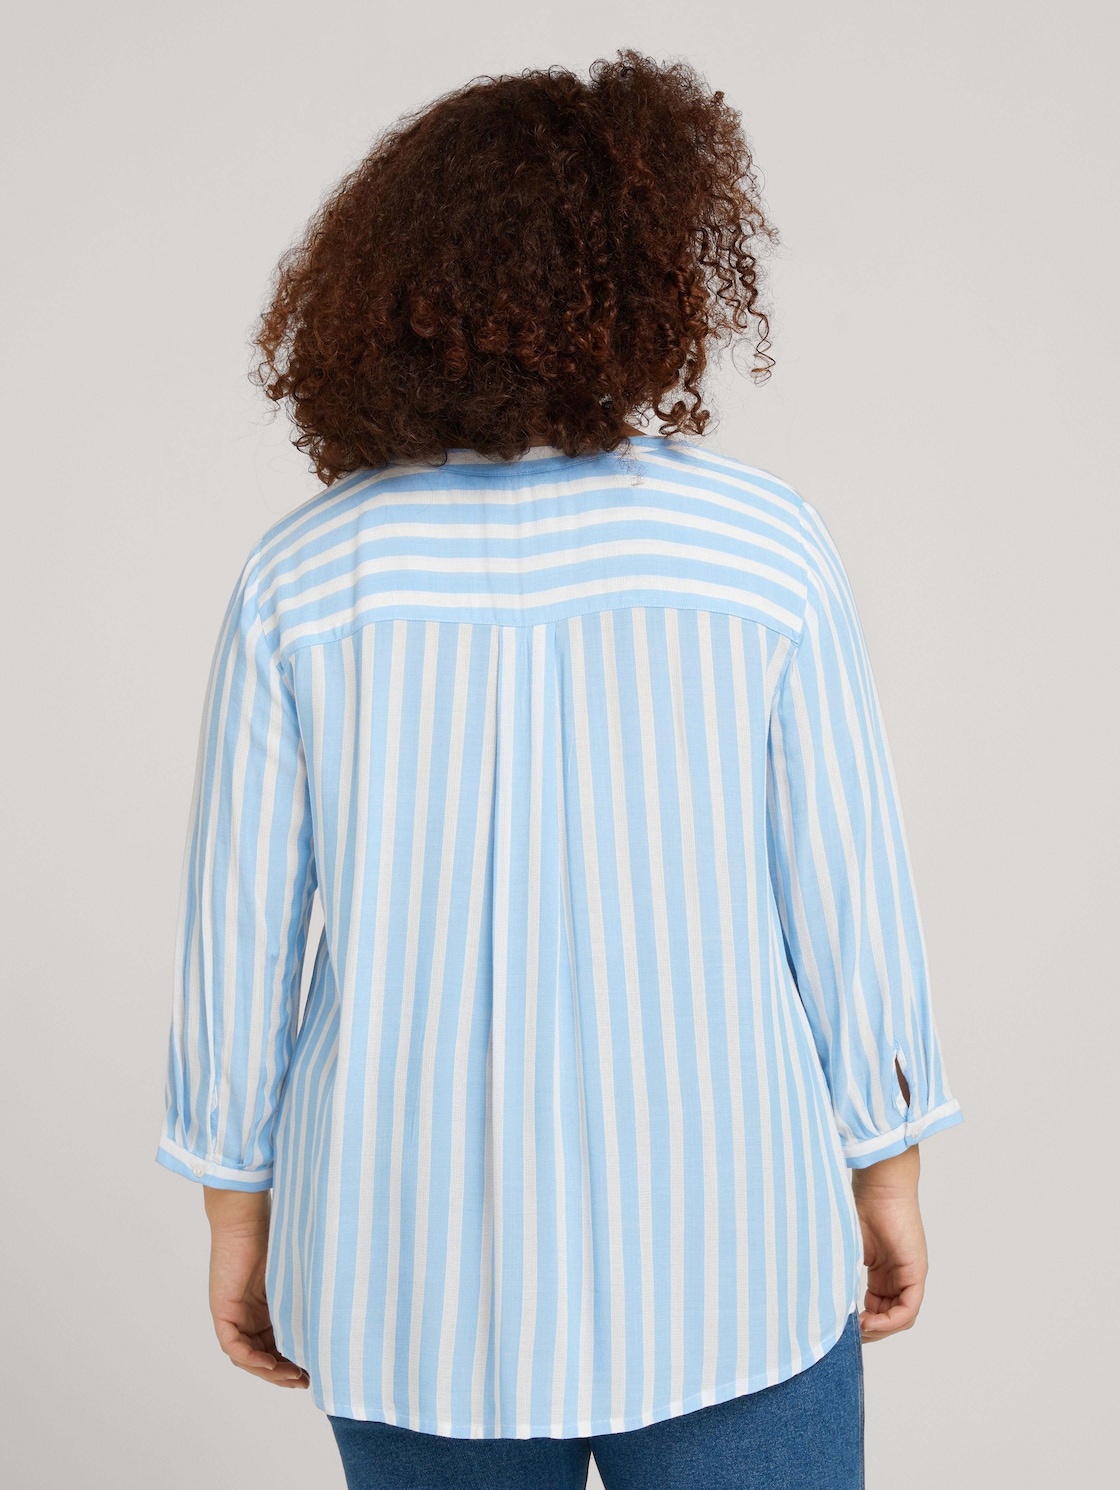 Bild von Damen Plussize Bluse mit Streifen Gr. 54